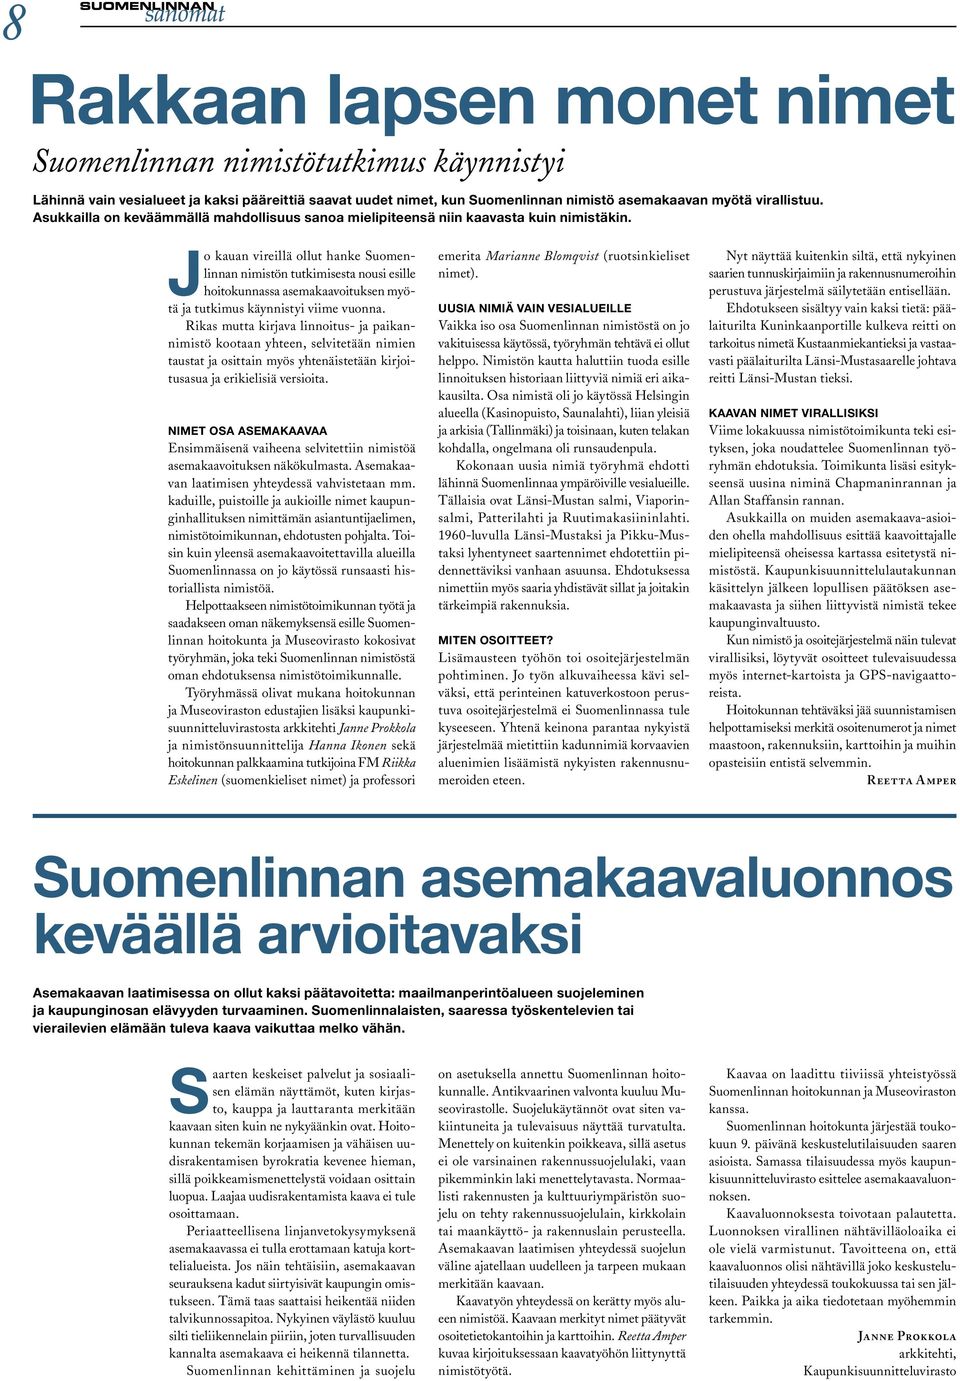 Jo kauan vireillä ollut hanke Suomenlinnan nimistön tutkimisesta nousi esille hoitokunnassa asemakaavoituksen myötä ja tutkimus käynnistyi viime vuonna.